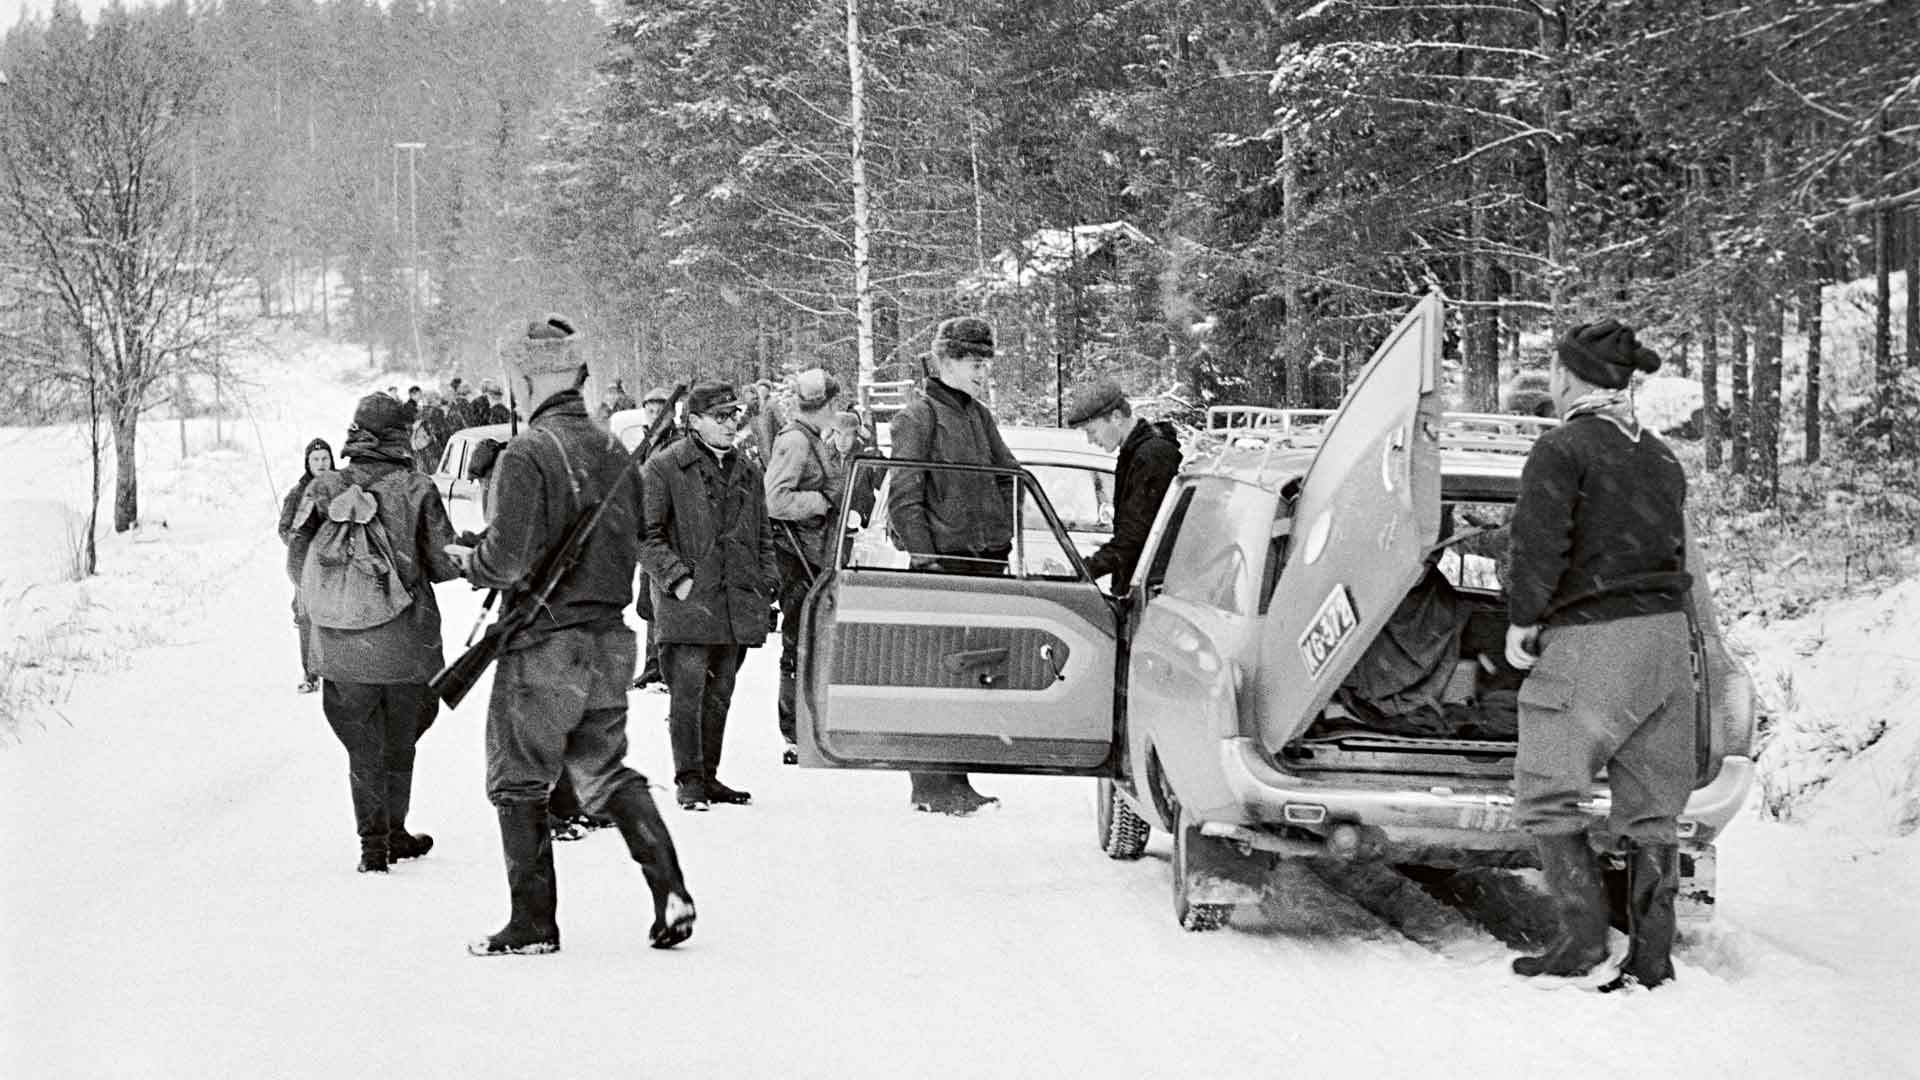 Jossain päin Suomea on jälleen nähty susi. Kuva Rautalammilta tammikuussa 1964.